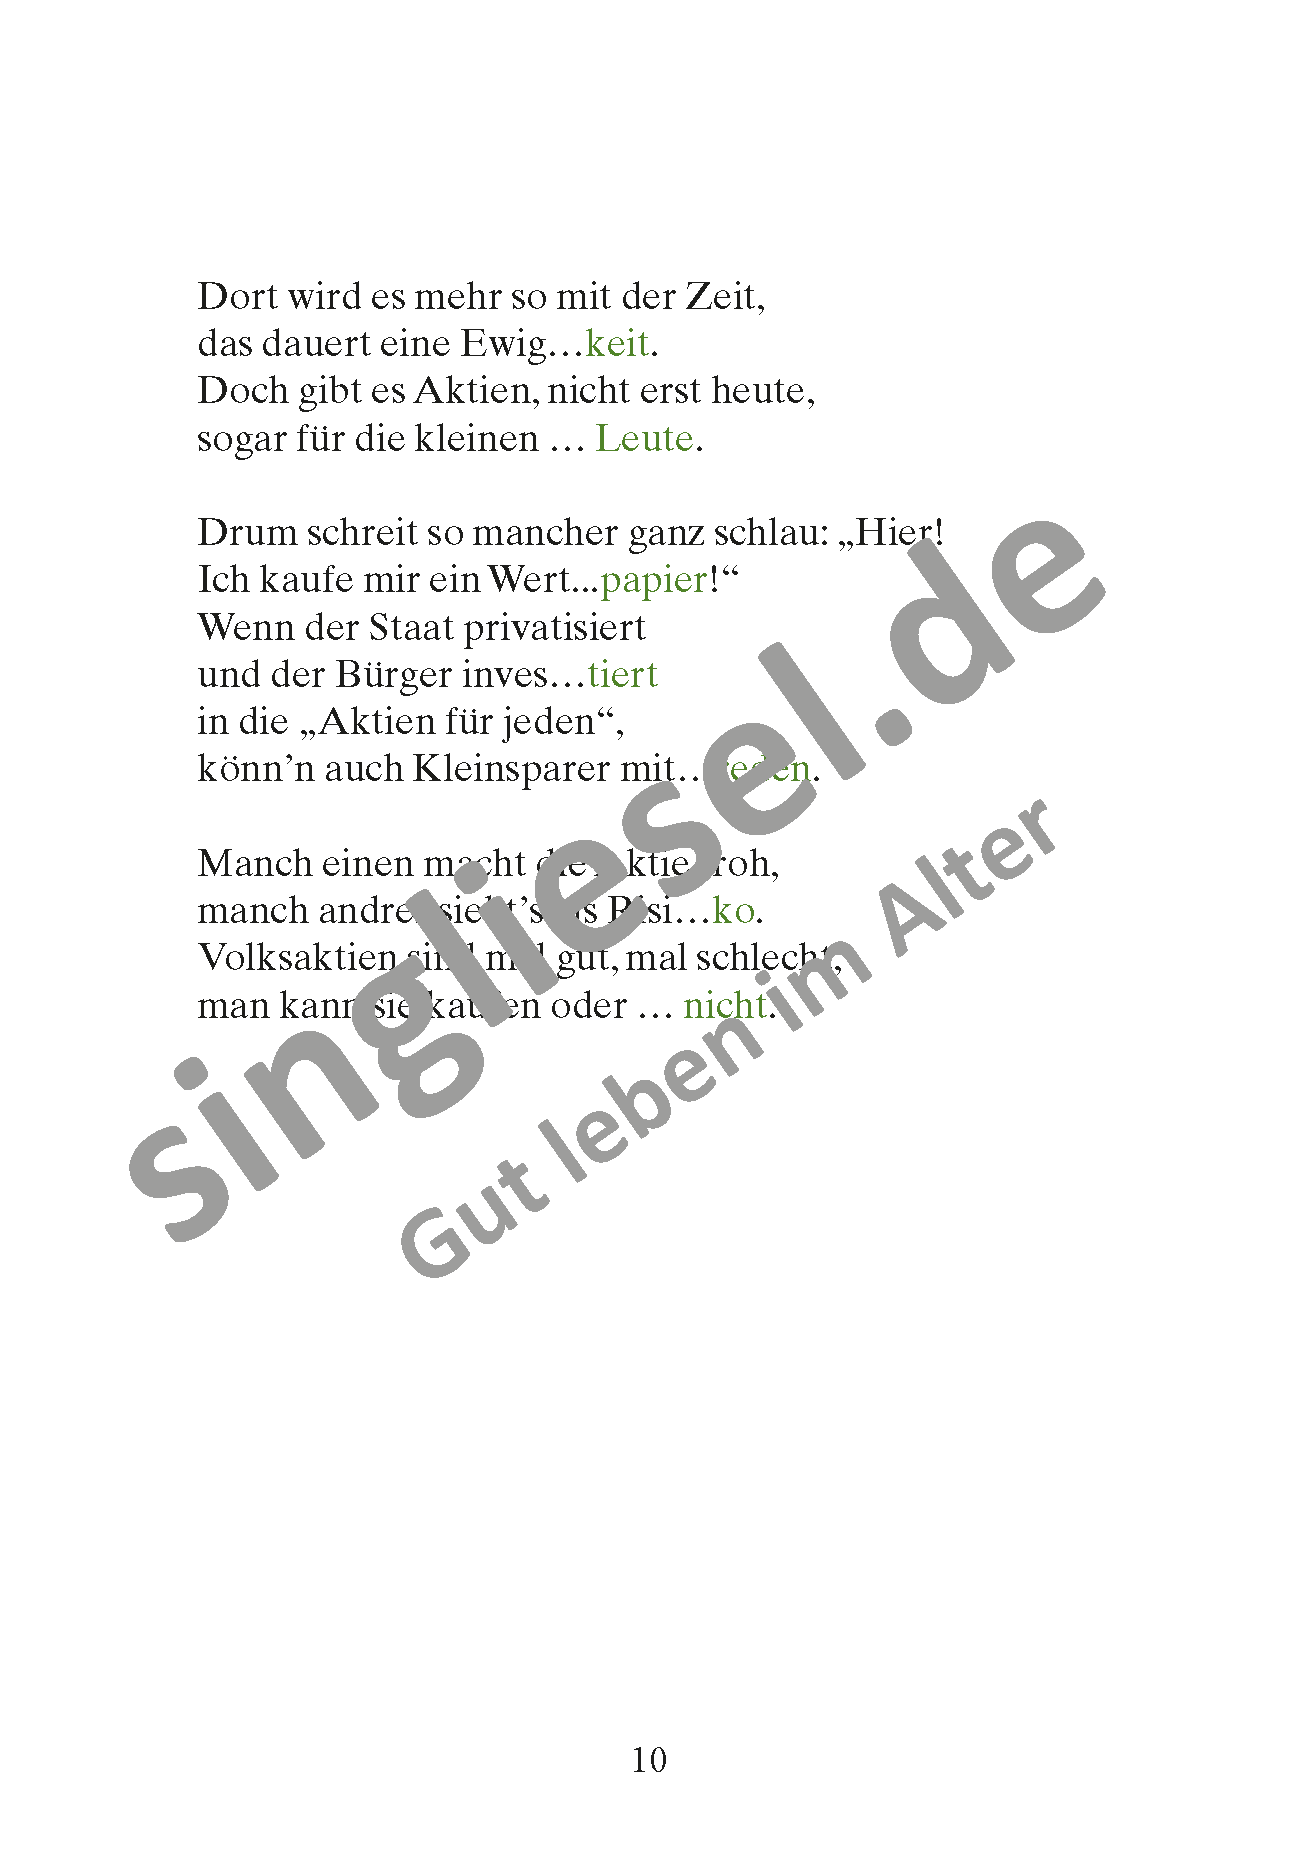 März - Lücken-Geschichten in Reimen. Sofort PDF Download. Der Kleinsparer Seite 2